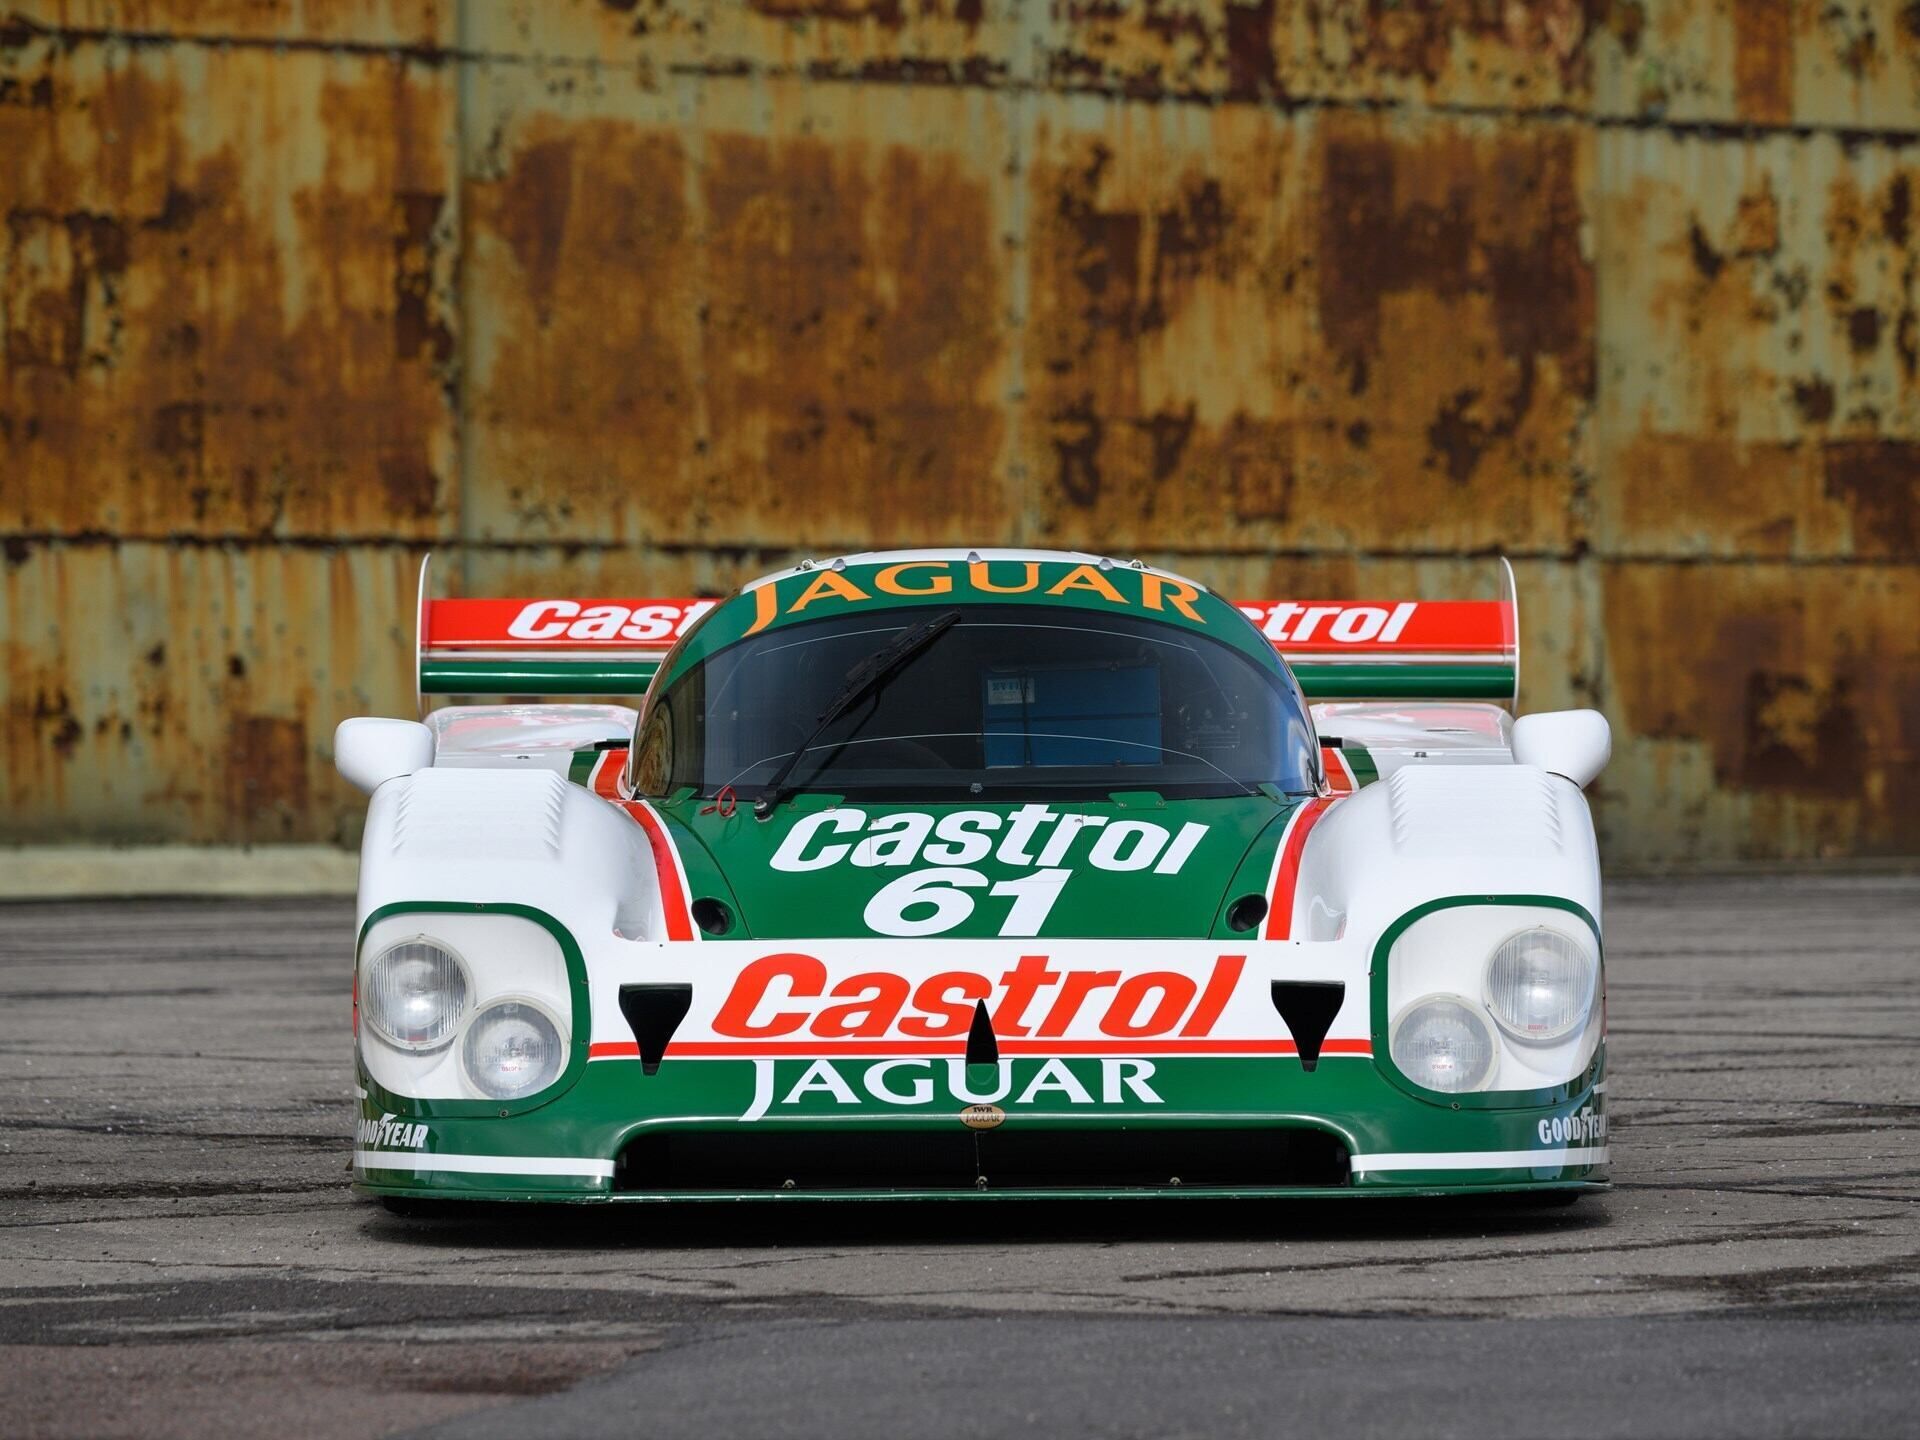 Jaguar XJR-9 Daytona Auction Front View